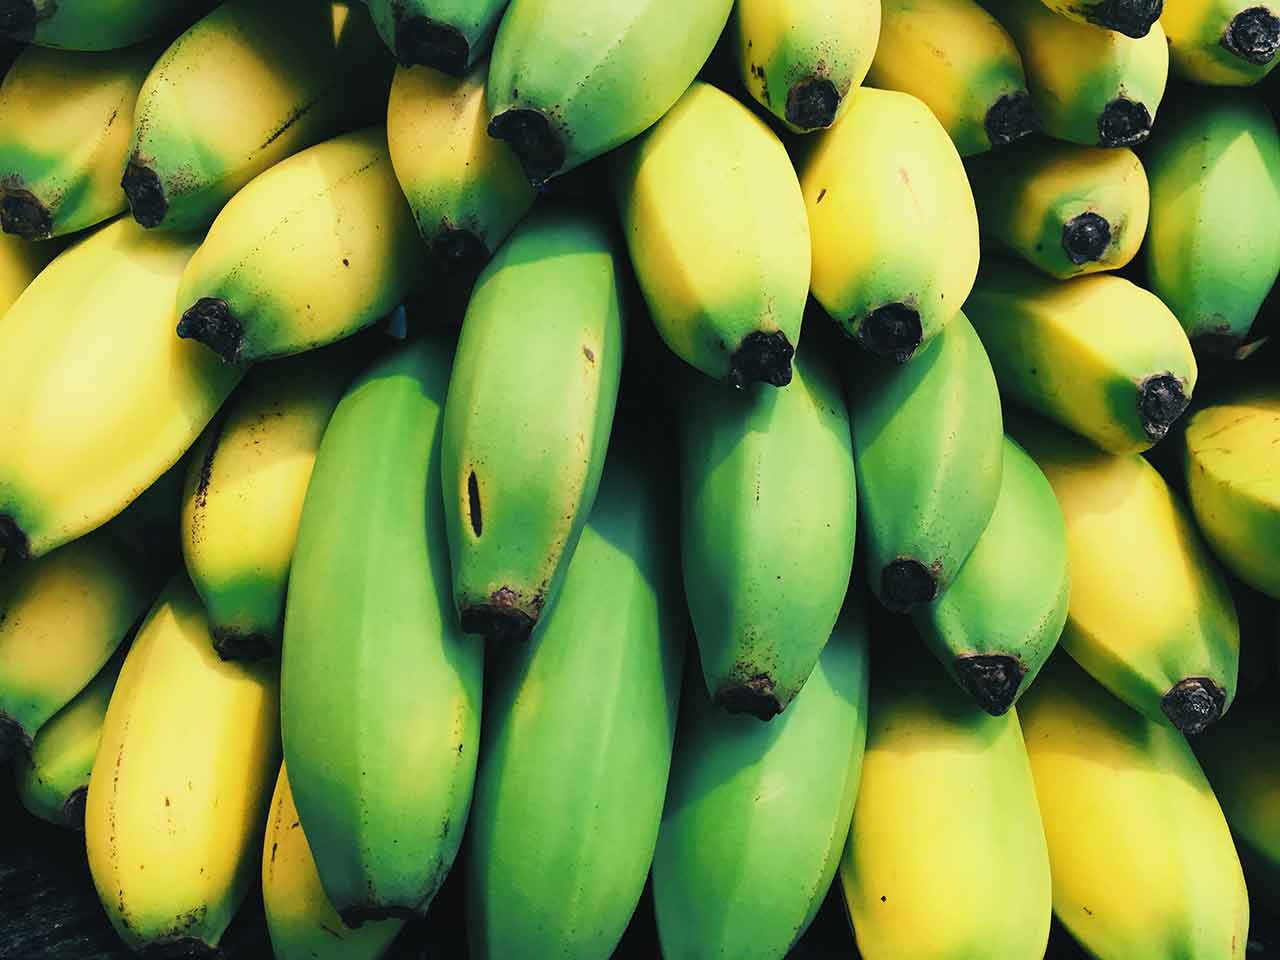 Αποθήκευση μπανανών: Πώς να τις αποθηκεύσετε για μεγαλύτερο χρονικό διάστημα;